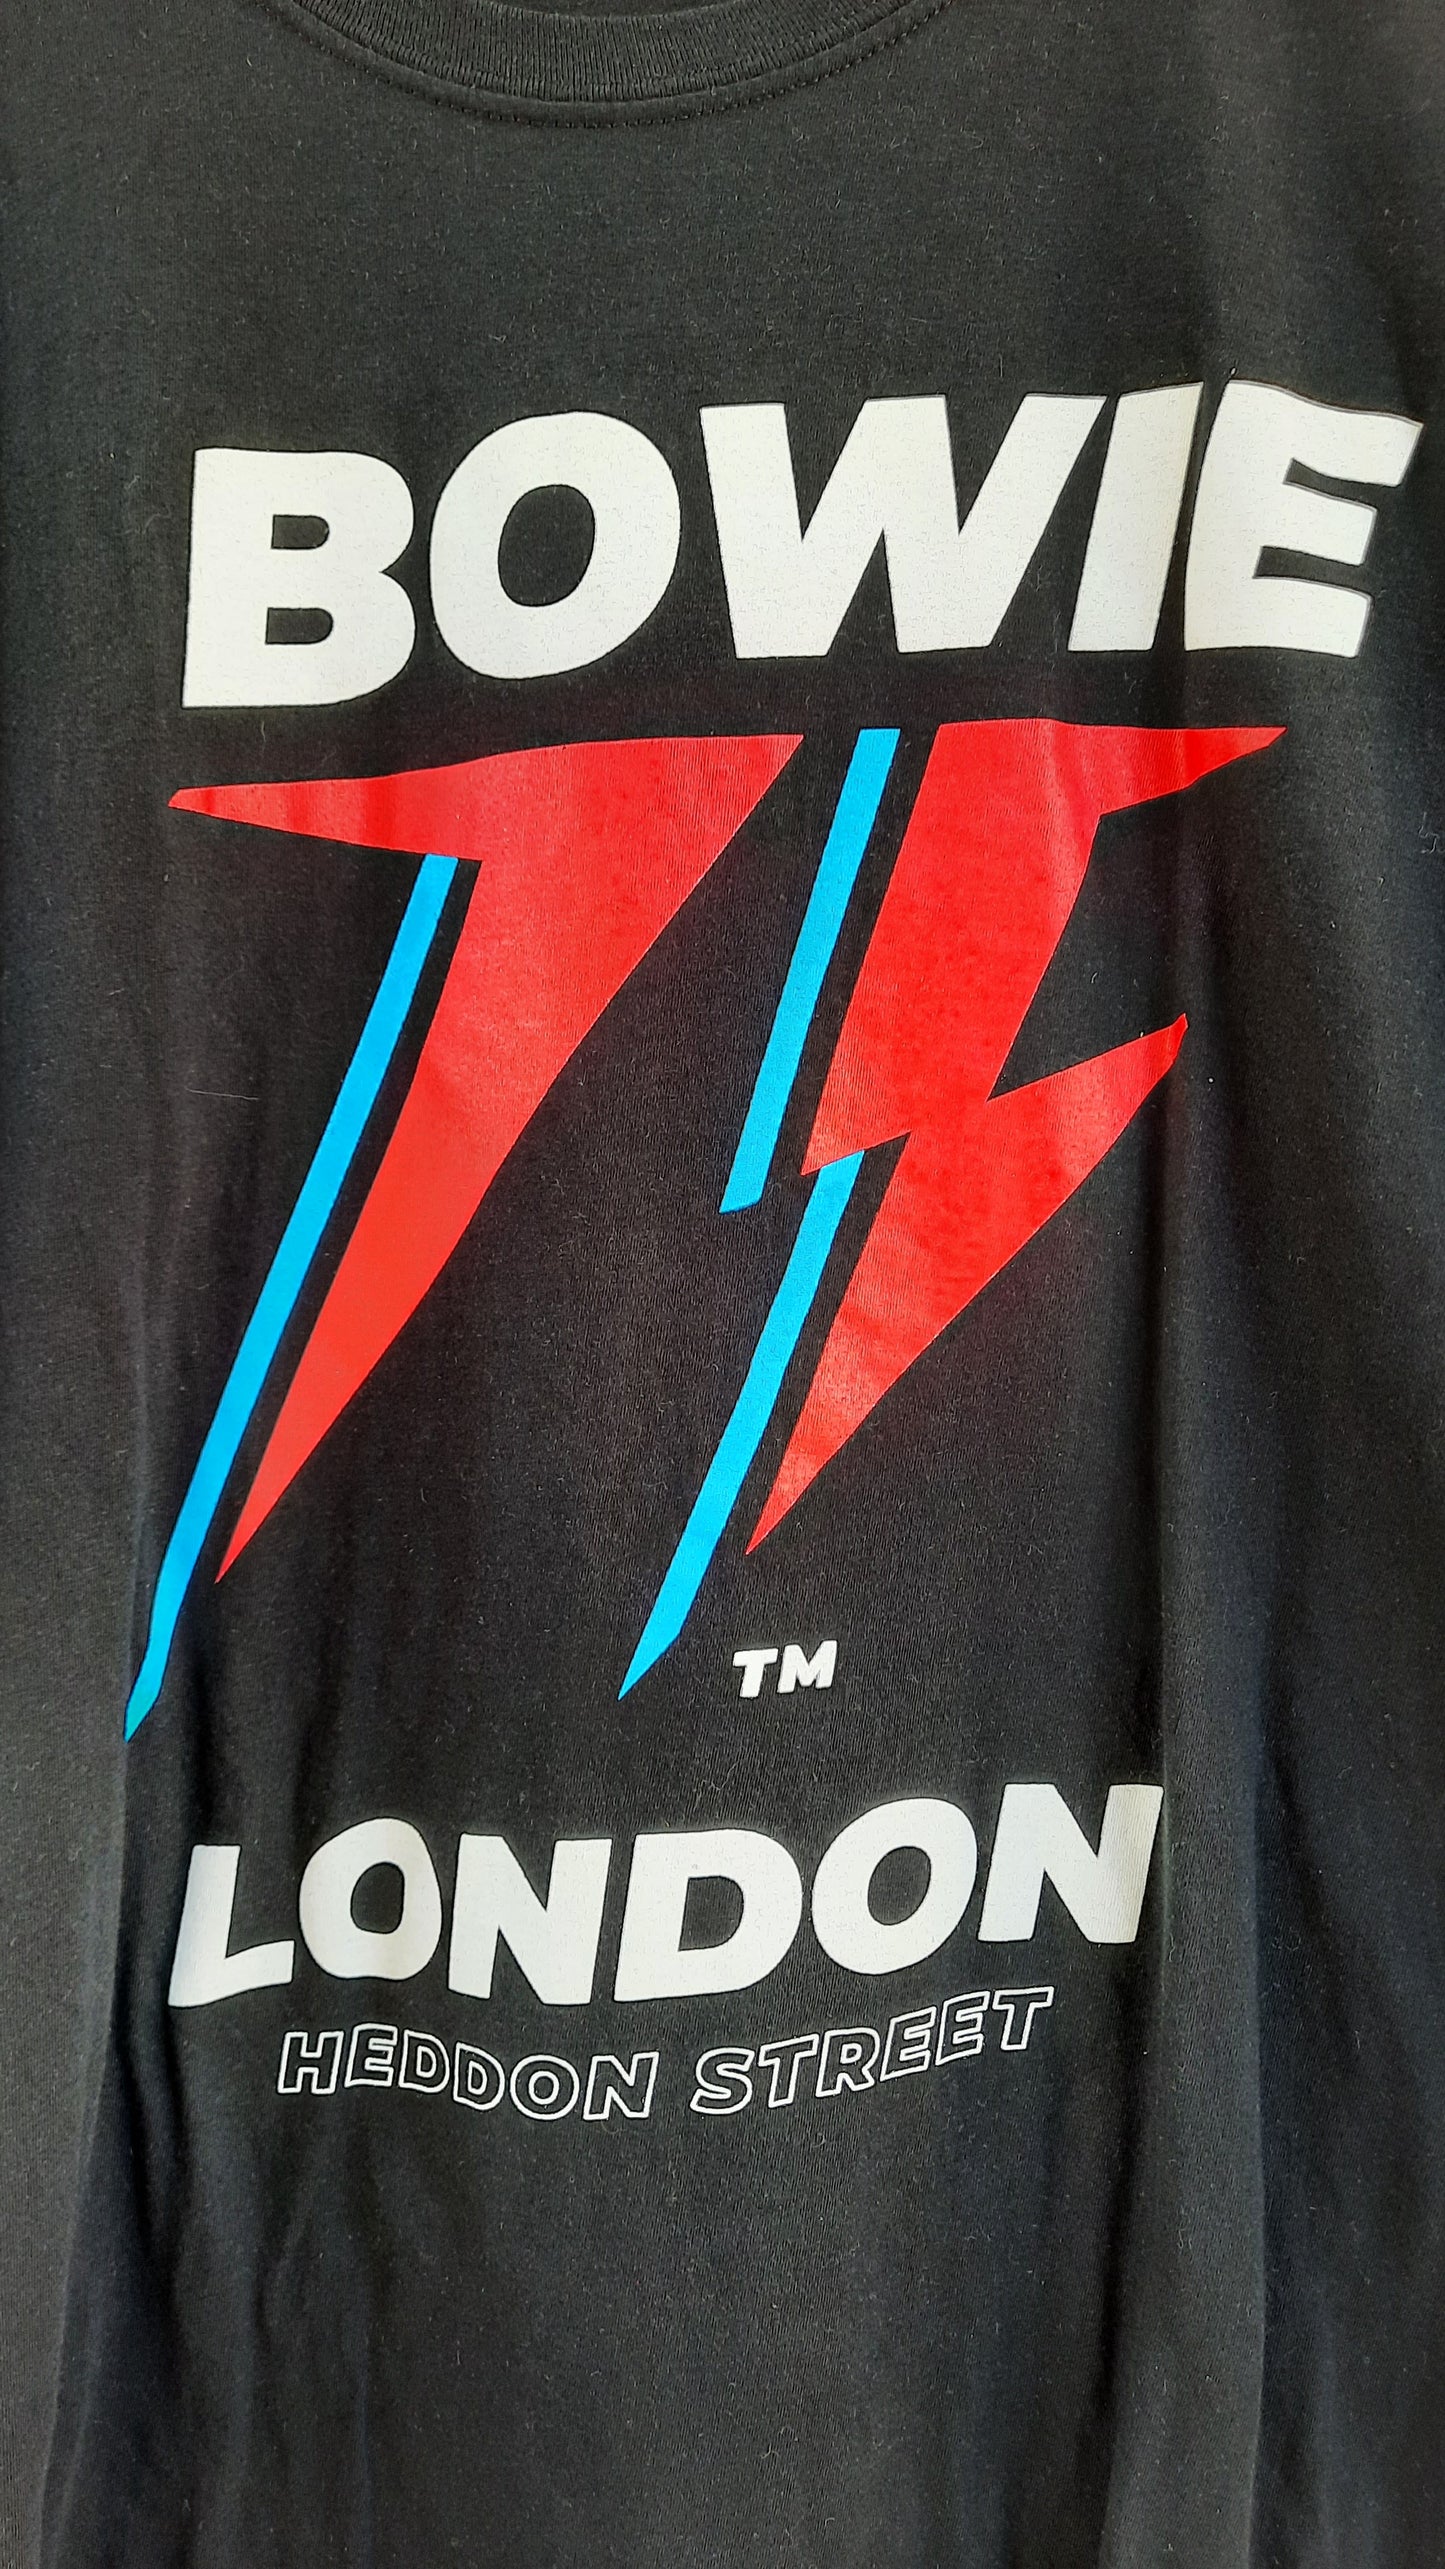 Authentic David Bowie Merchandise Graphic T-shirt